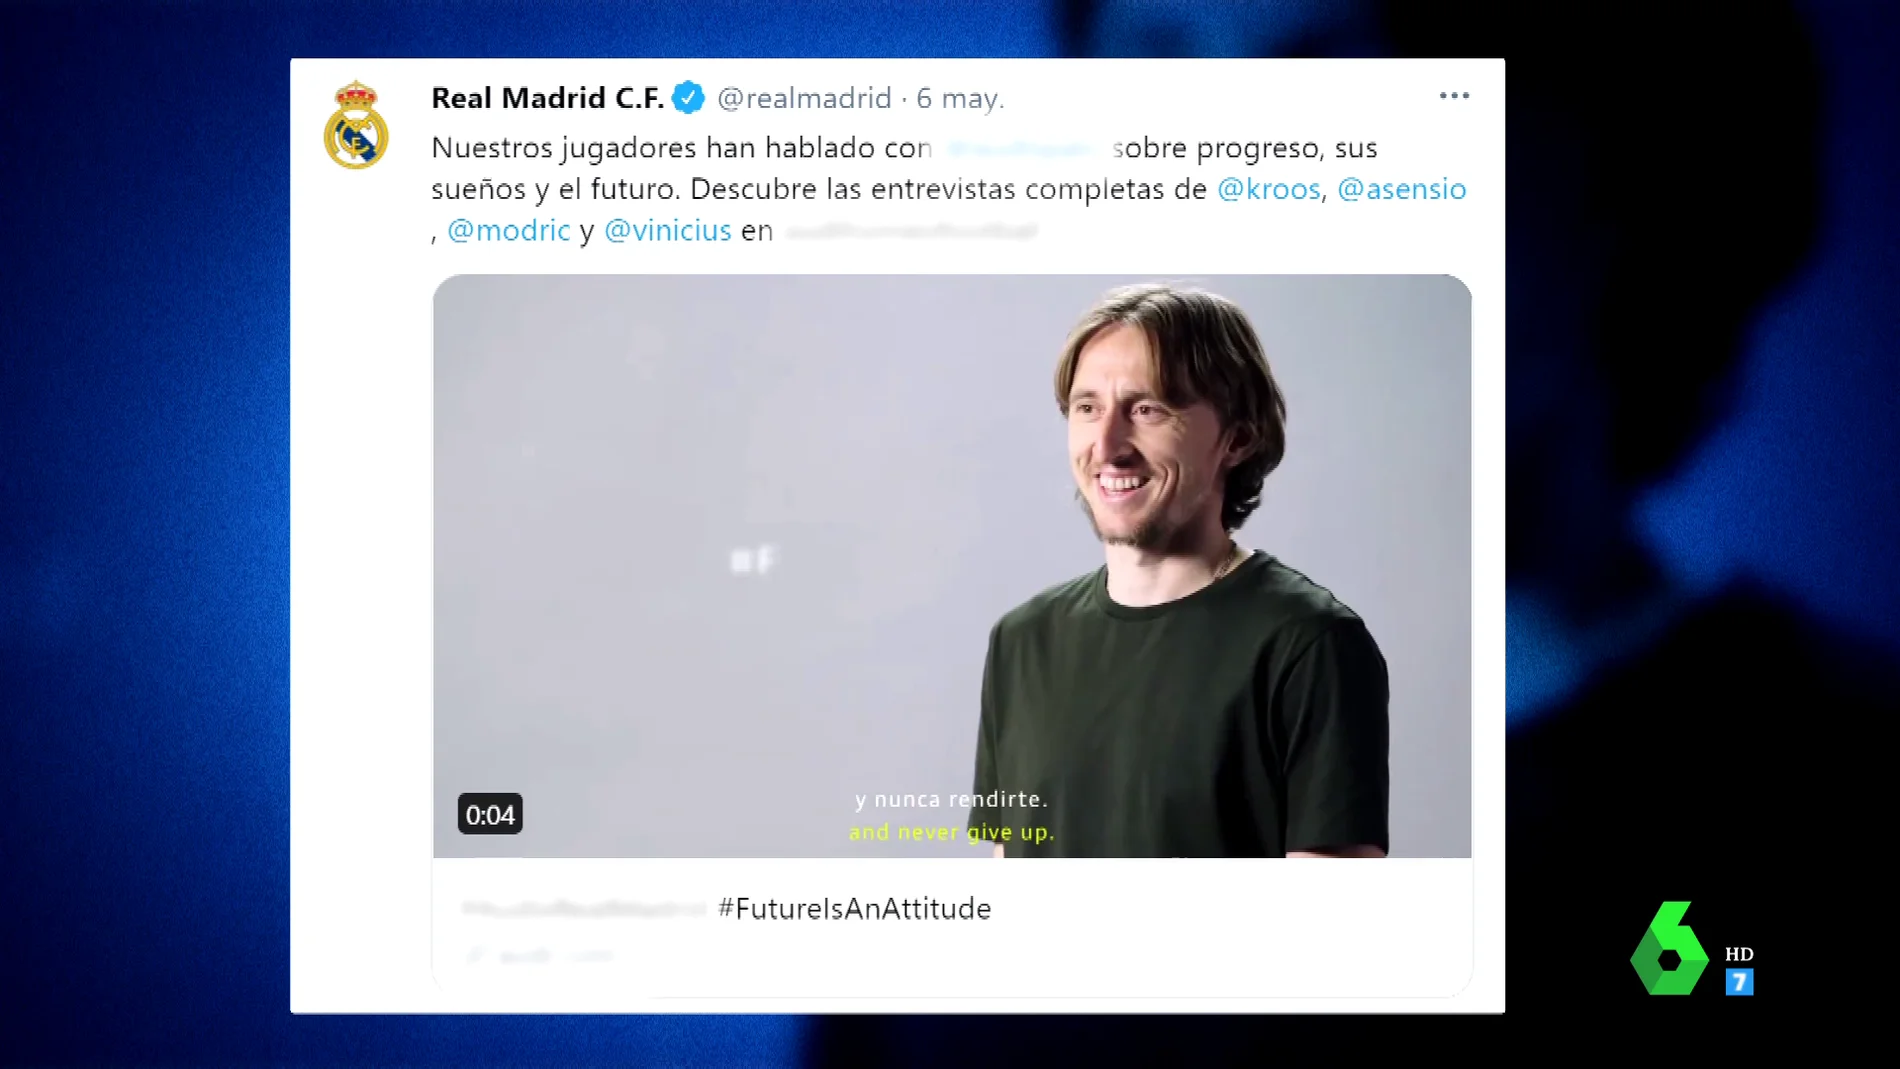  El error del Real Madrid en Twitter: confunde a usuarios anónimos con Modric, Asensio o Vinicius